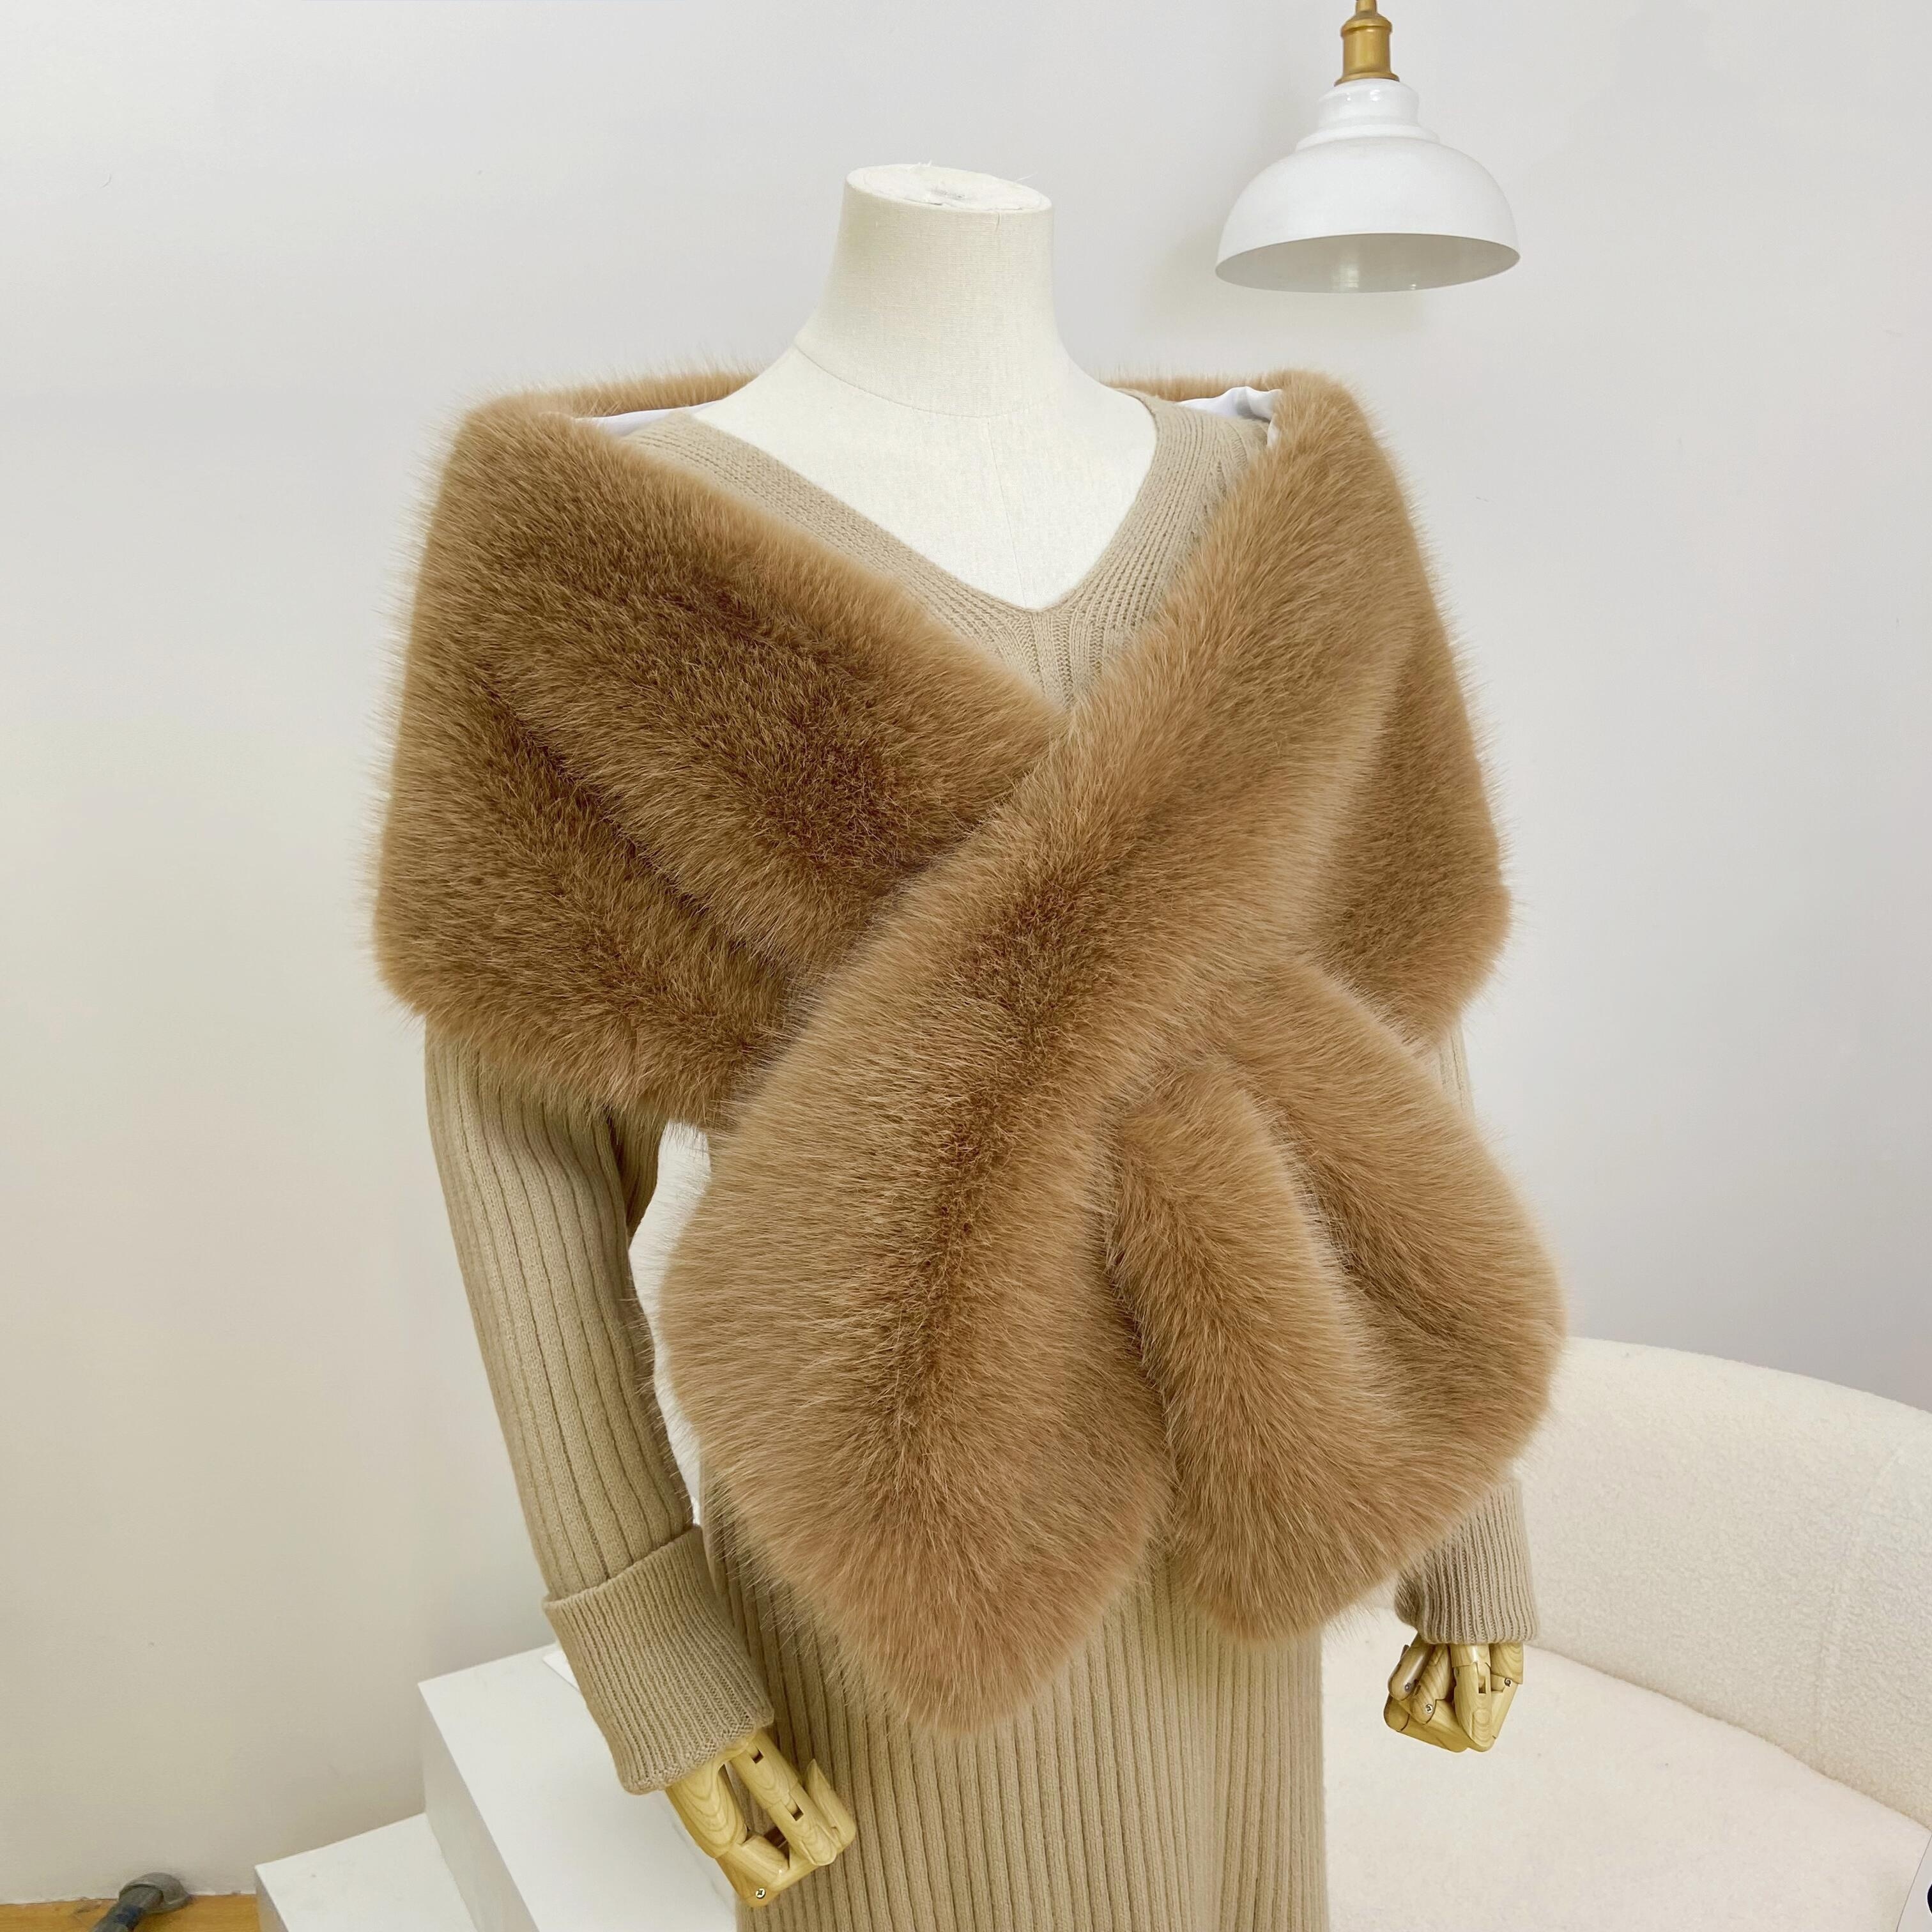 Best Deal for Caracilia Women Faux Fur Coat Jacket Wrap Cape Shawl